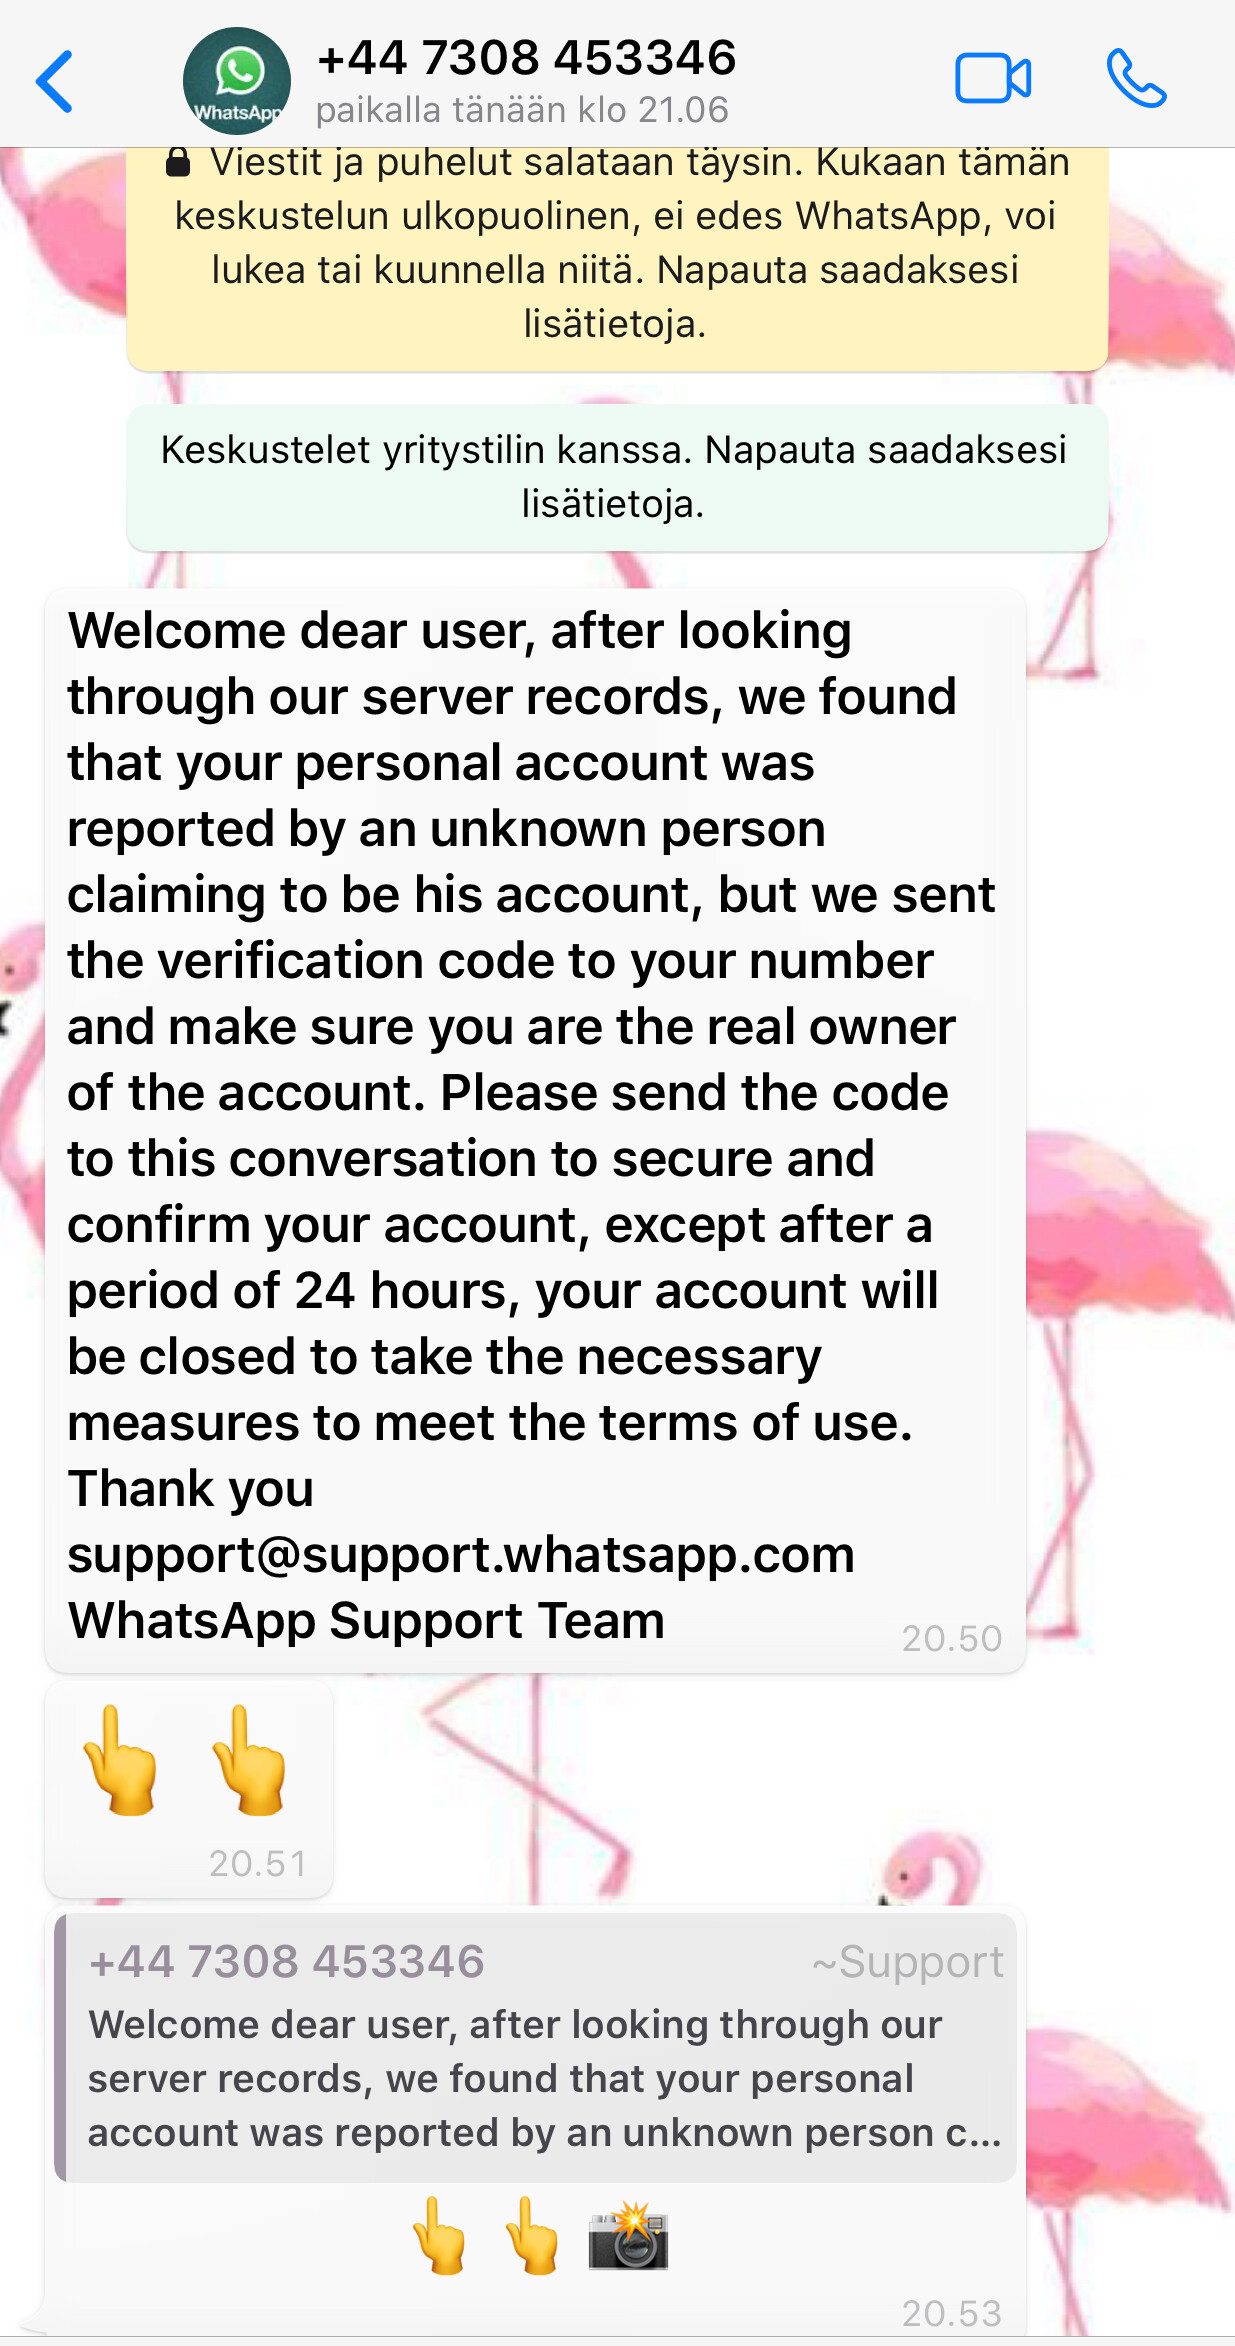 WhatsApp-tilin vahvistuskoodia kalasteleva viesti, jonka lähettäjä tekeytyy WhatsAppin tueksi (support).